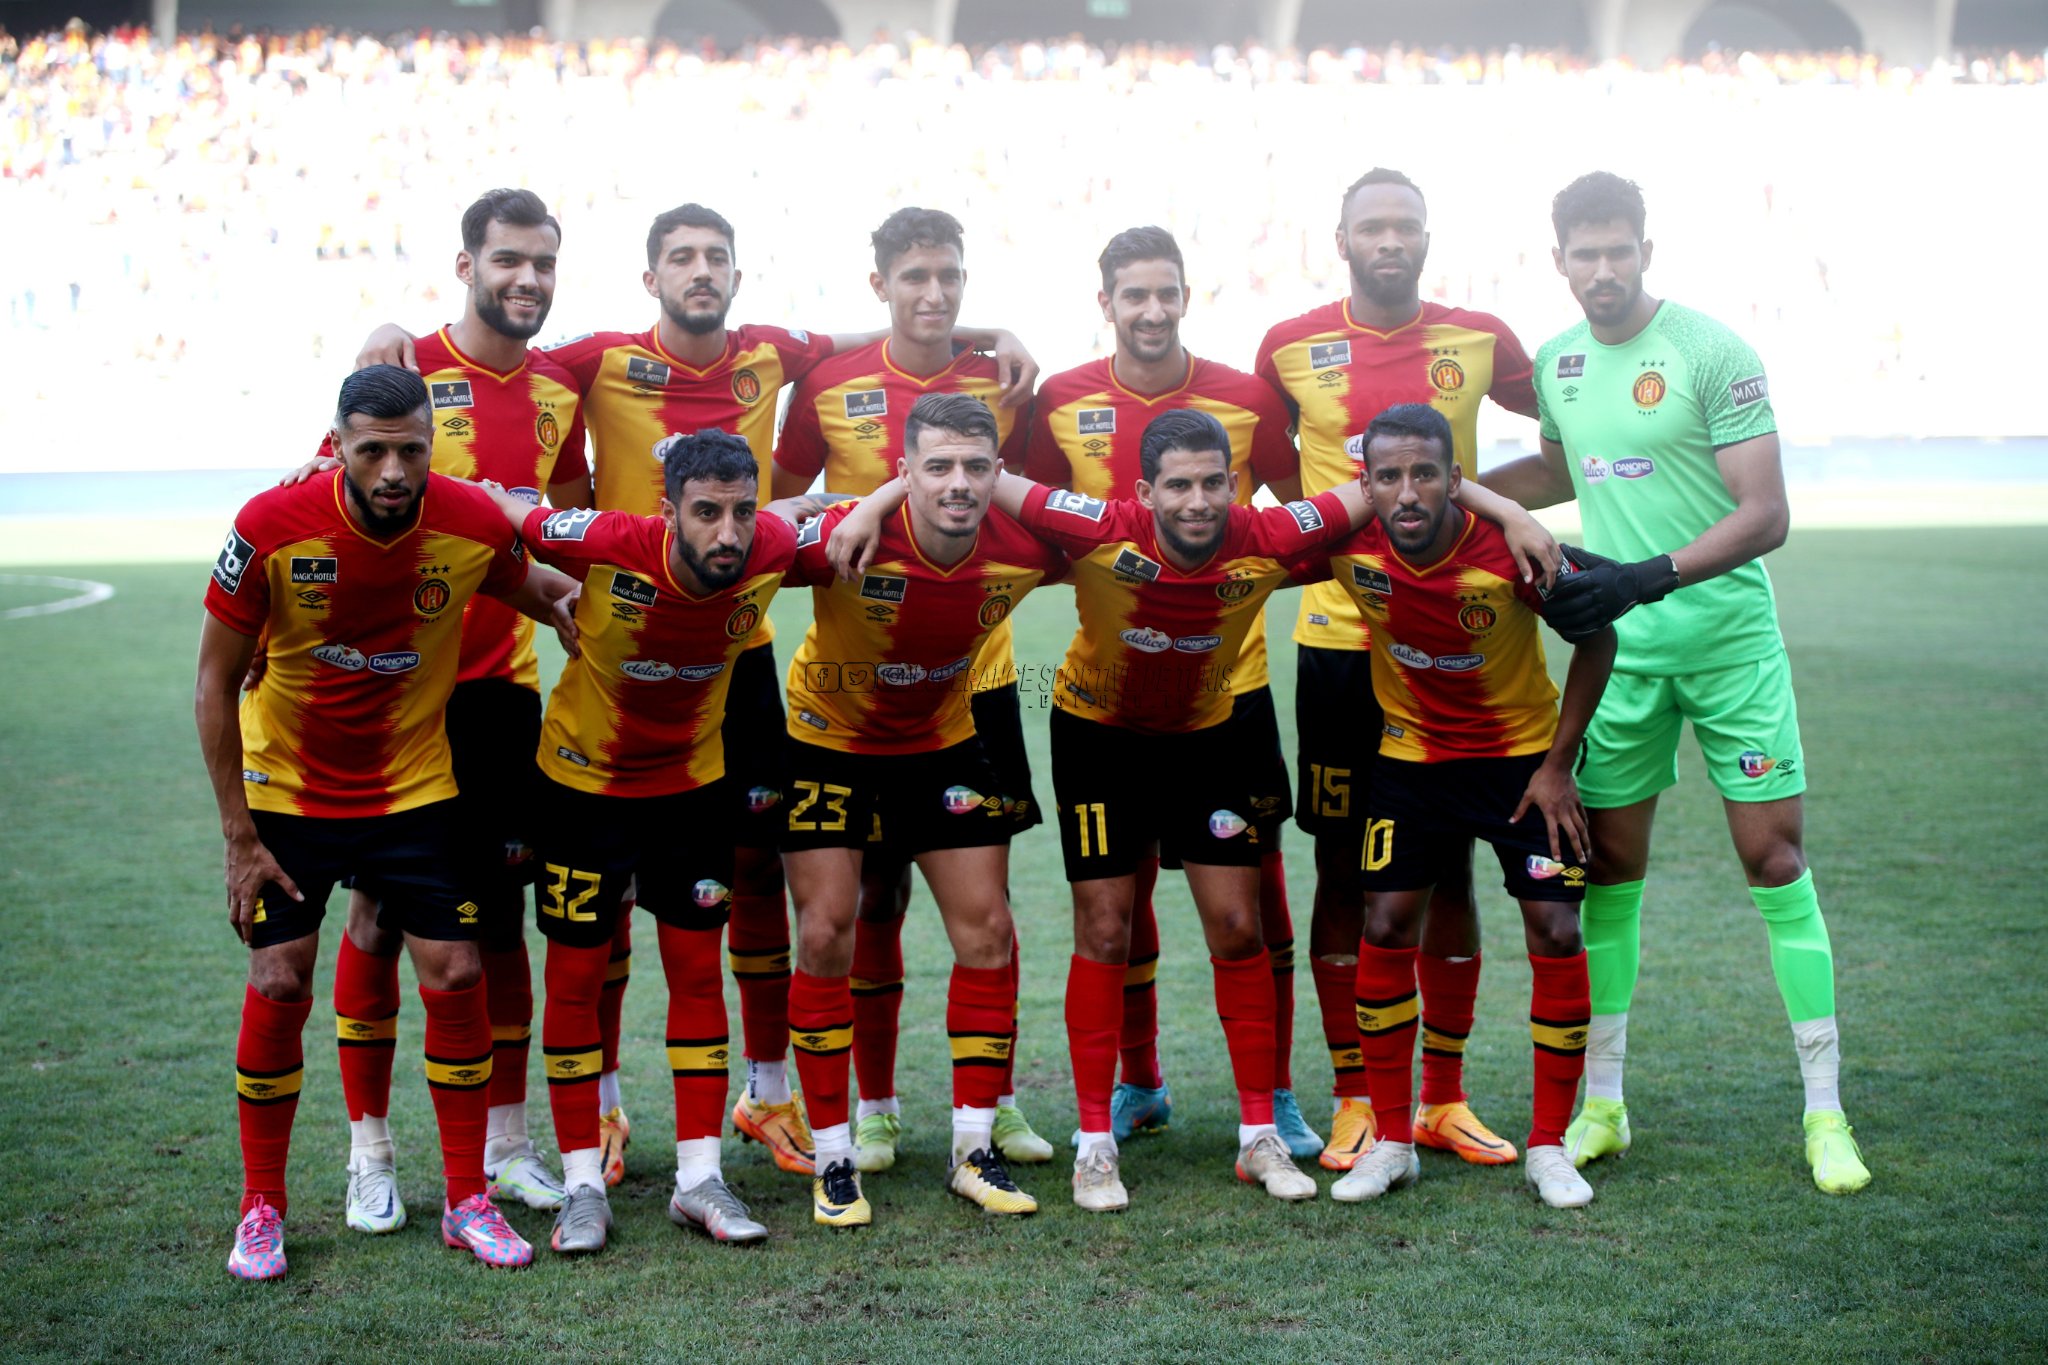  توج فريق الترجي بلقب الدوري التونسي لكرة القدم للمرة الـ32 في تاريخه والسادسة على التوالي (تويتر)